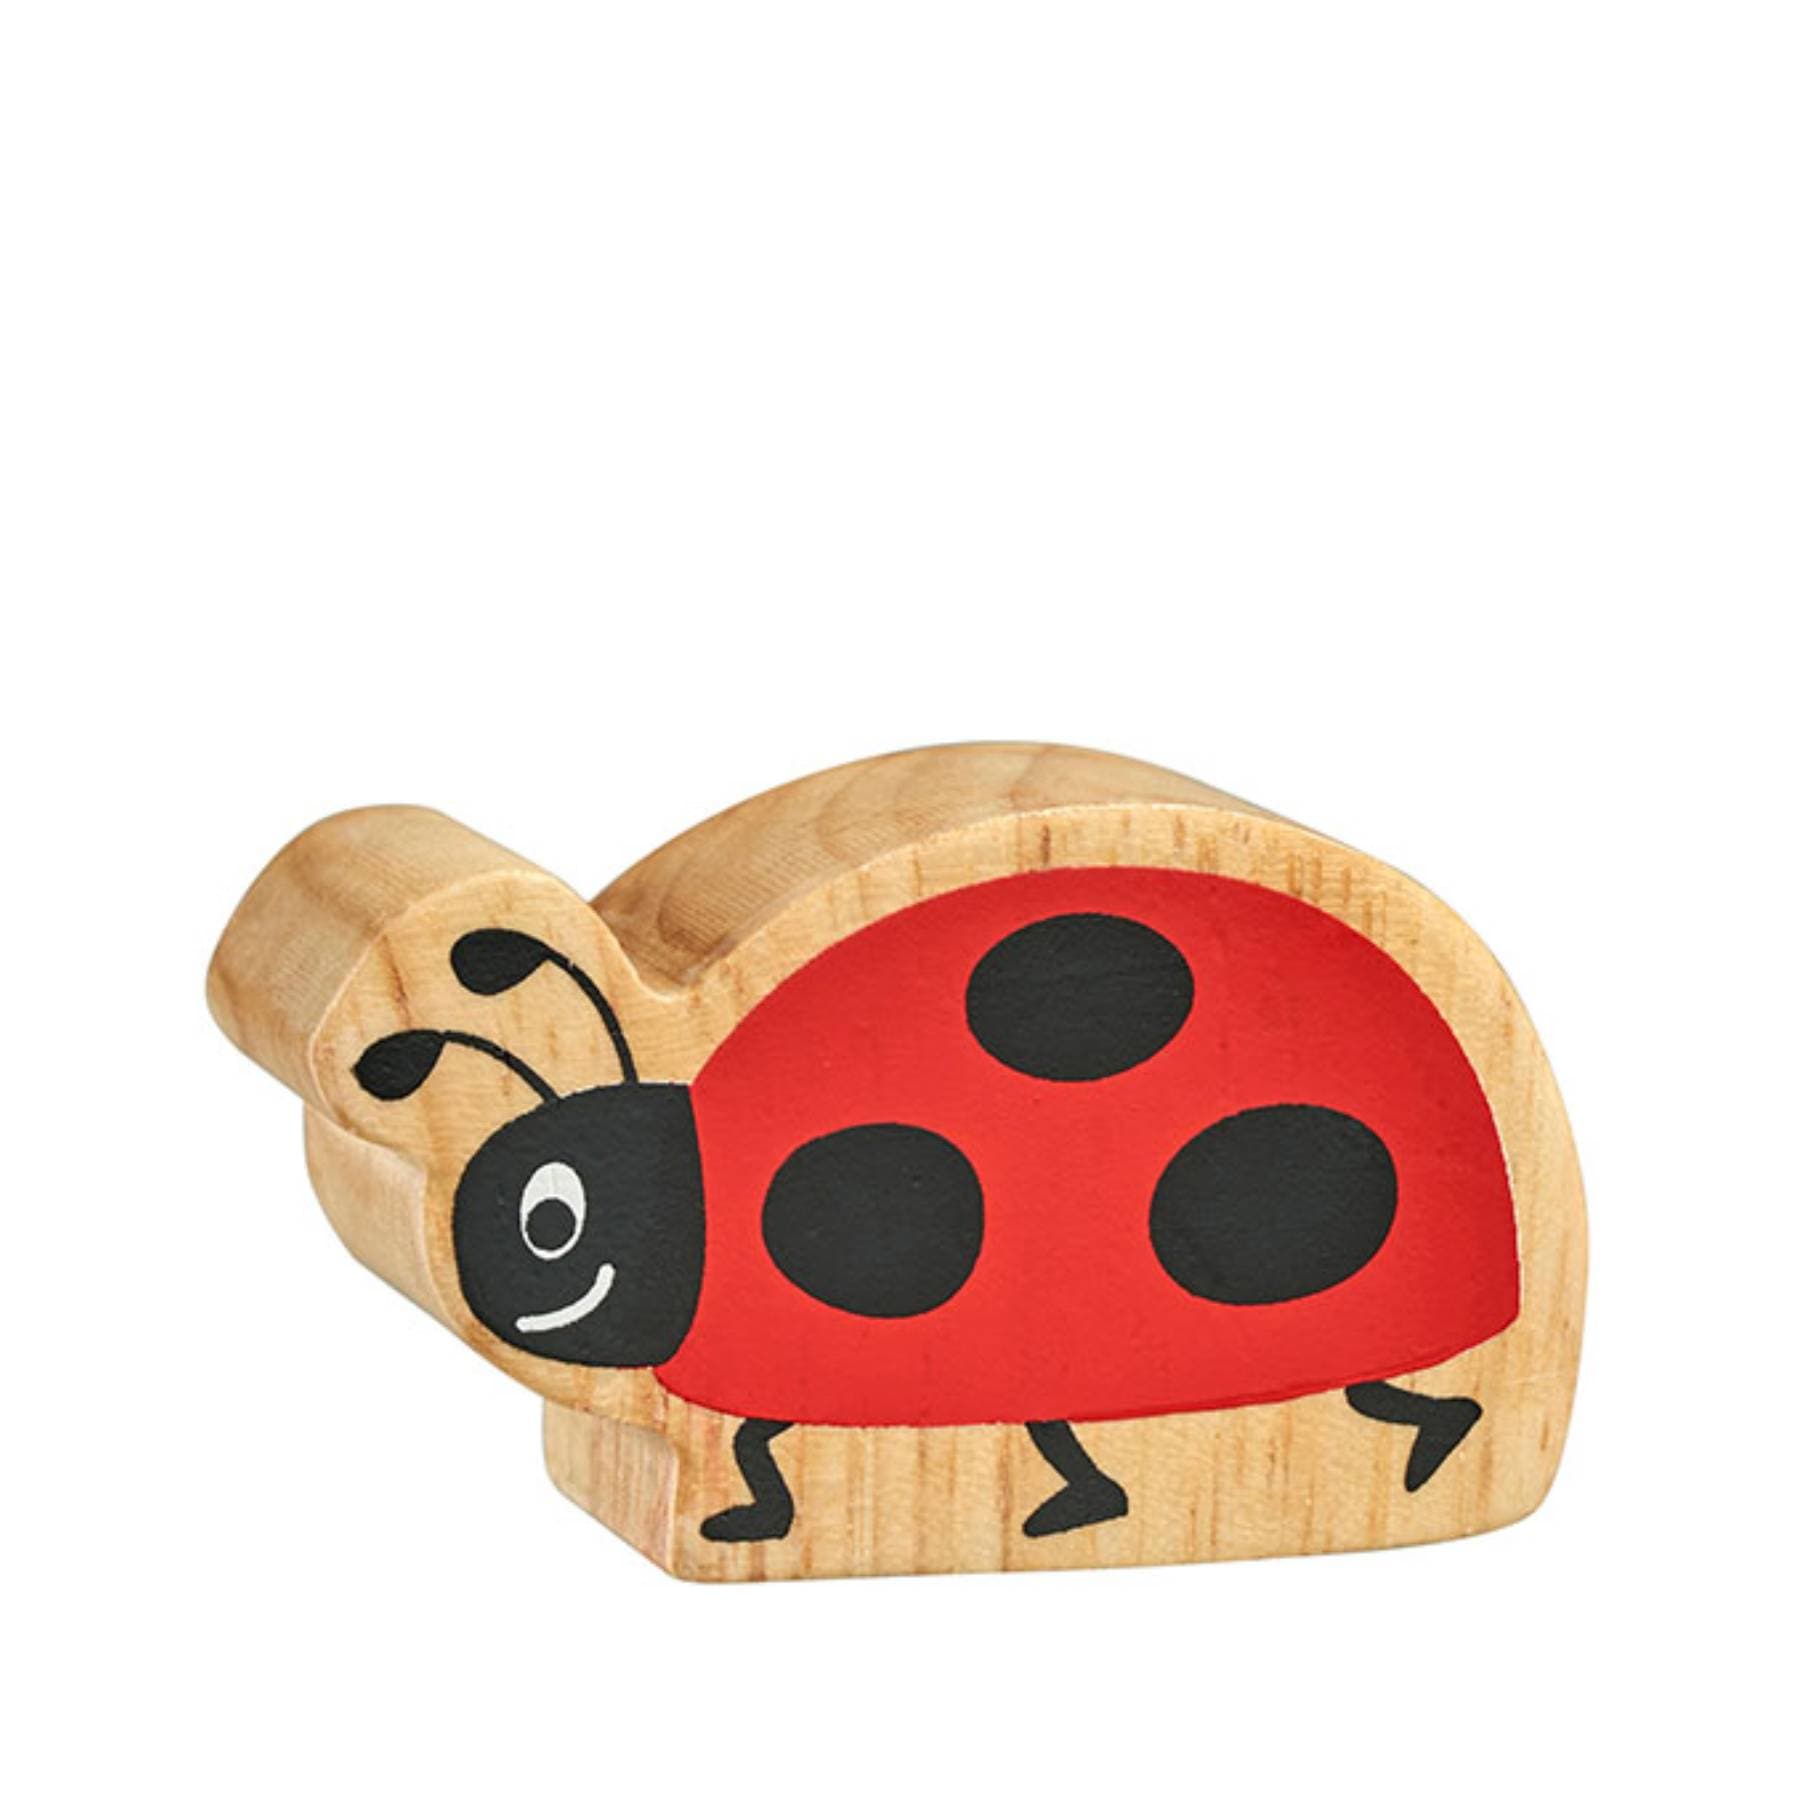 Wooden ladybird figure